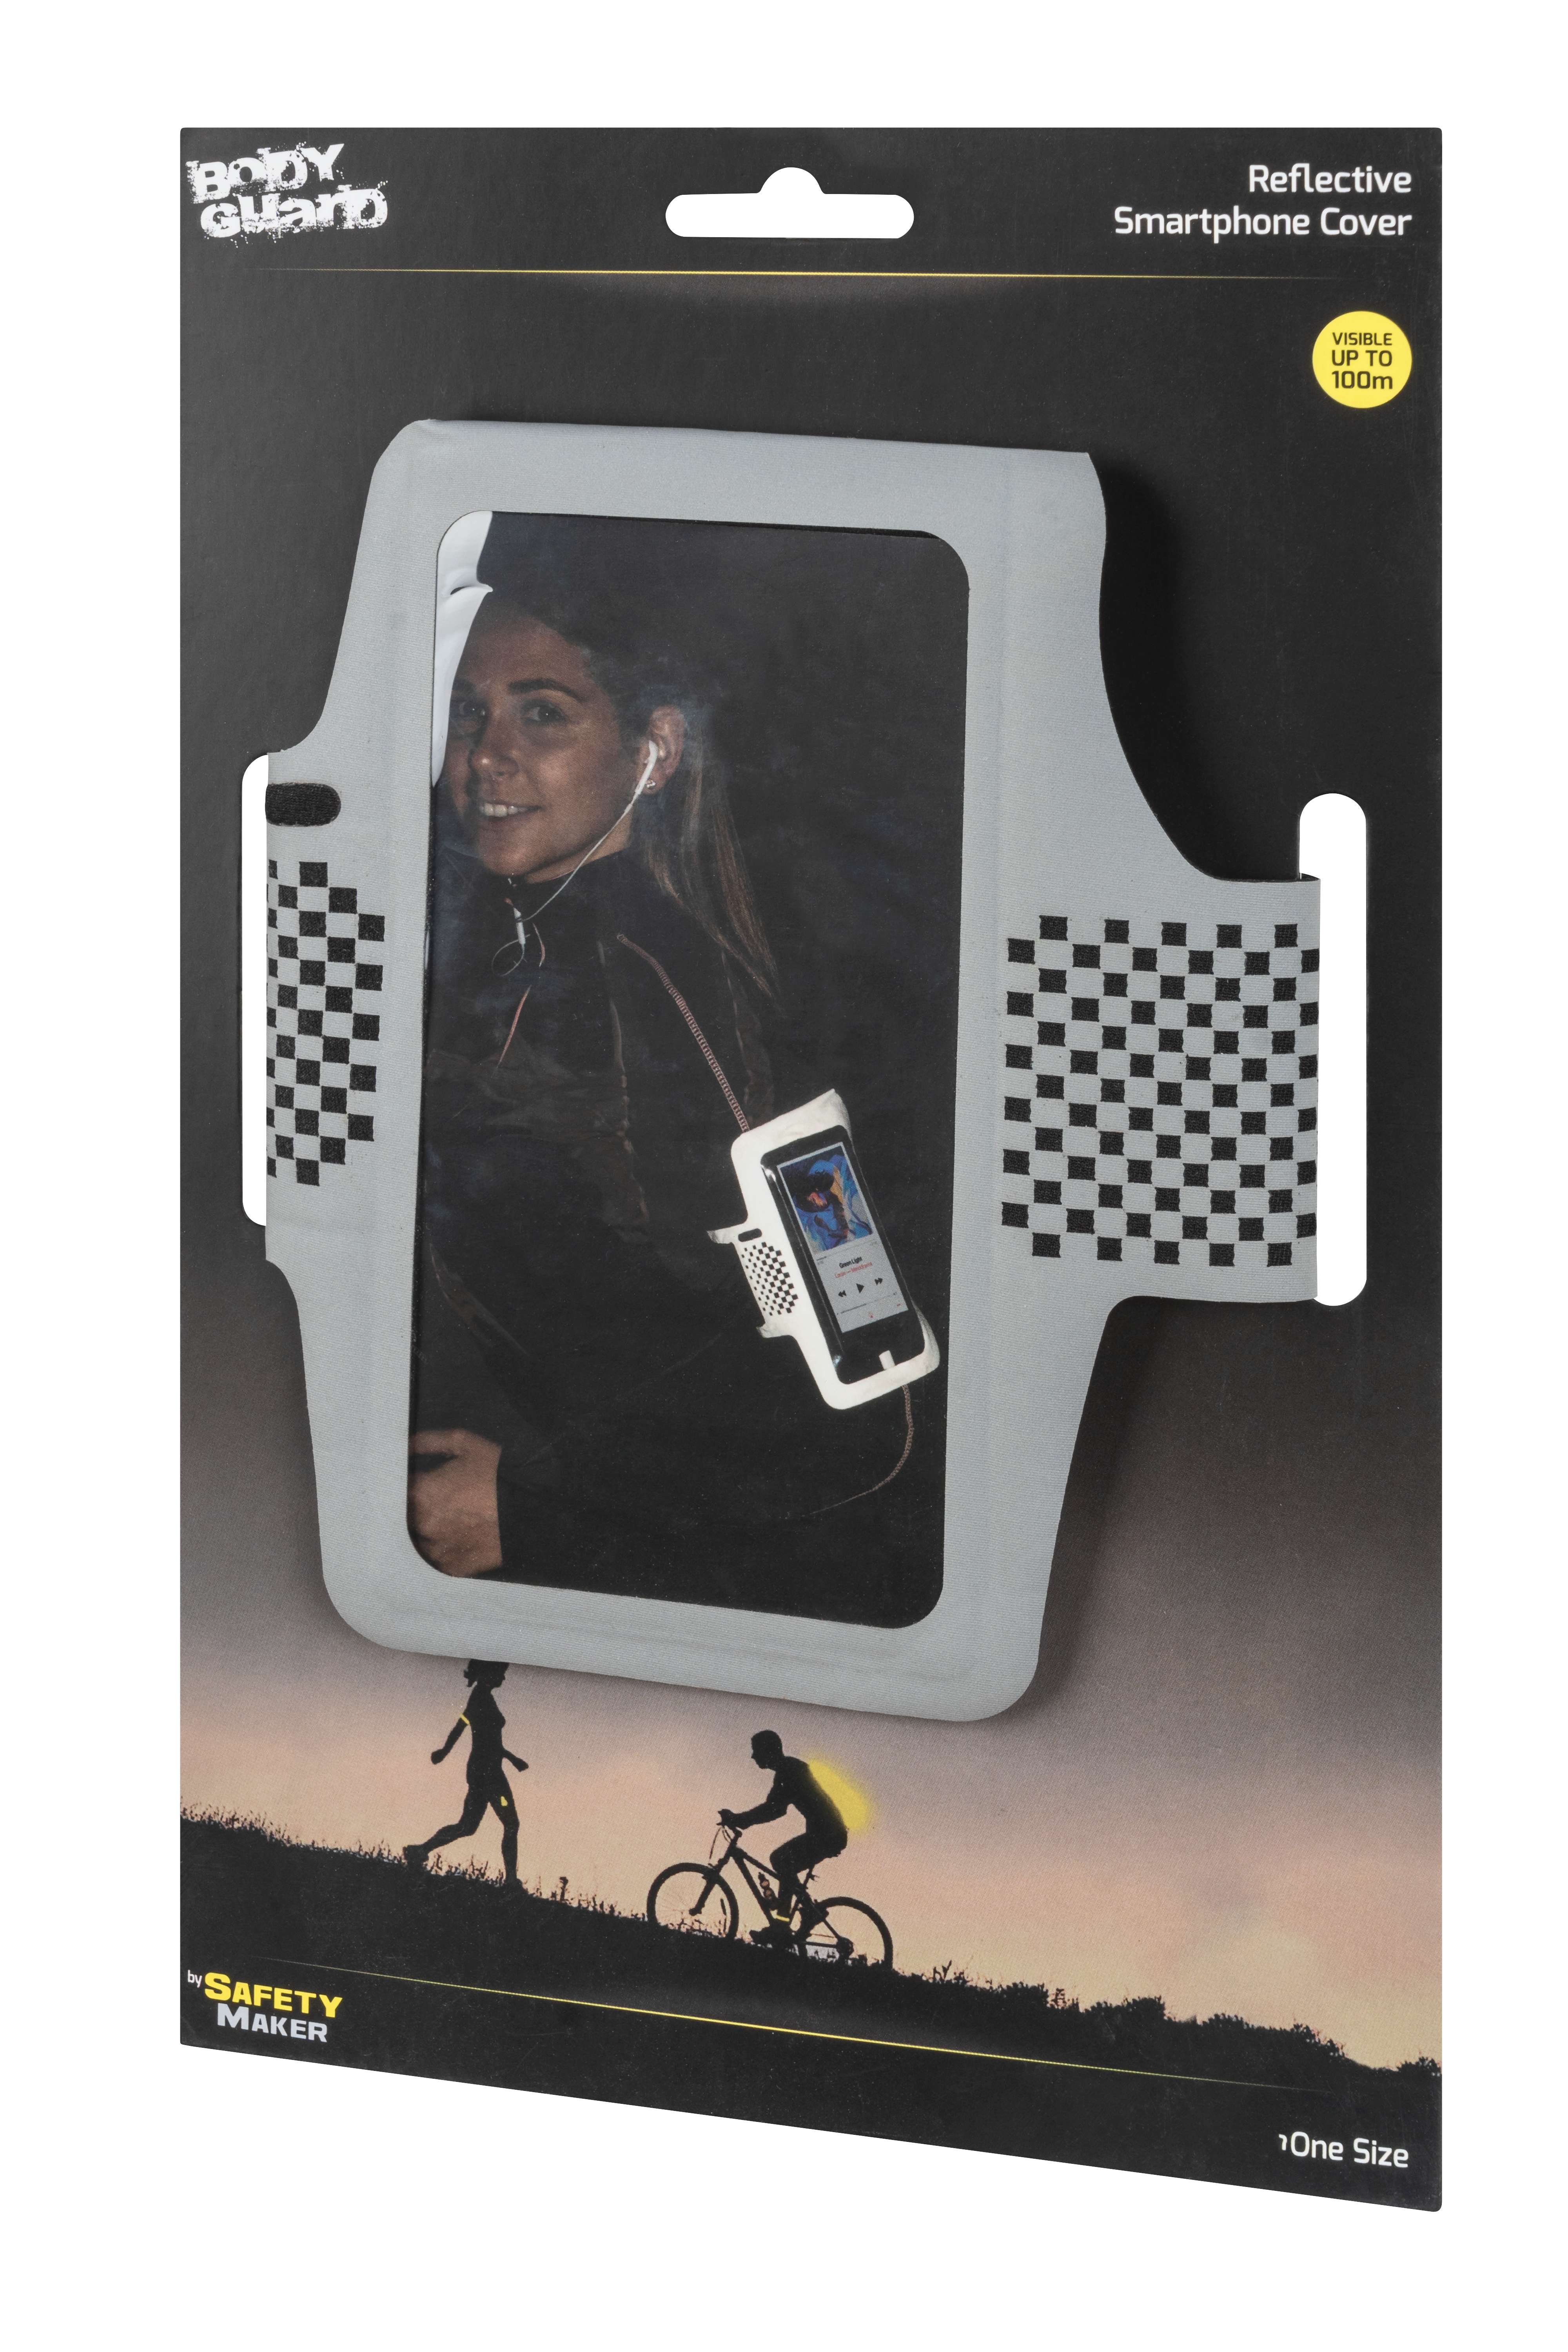 Safety Maker Smartphonehoesje waterdicht en reflecterend voor sport, joggen, telefoonhouder, hoesje voor hardlopen